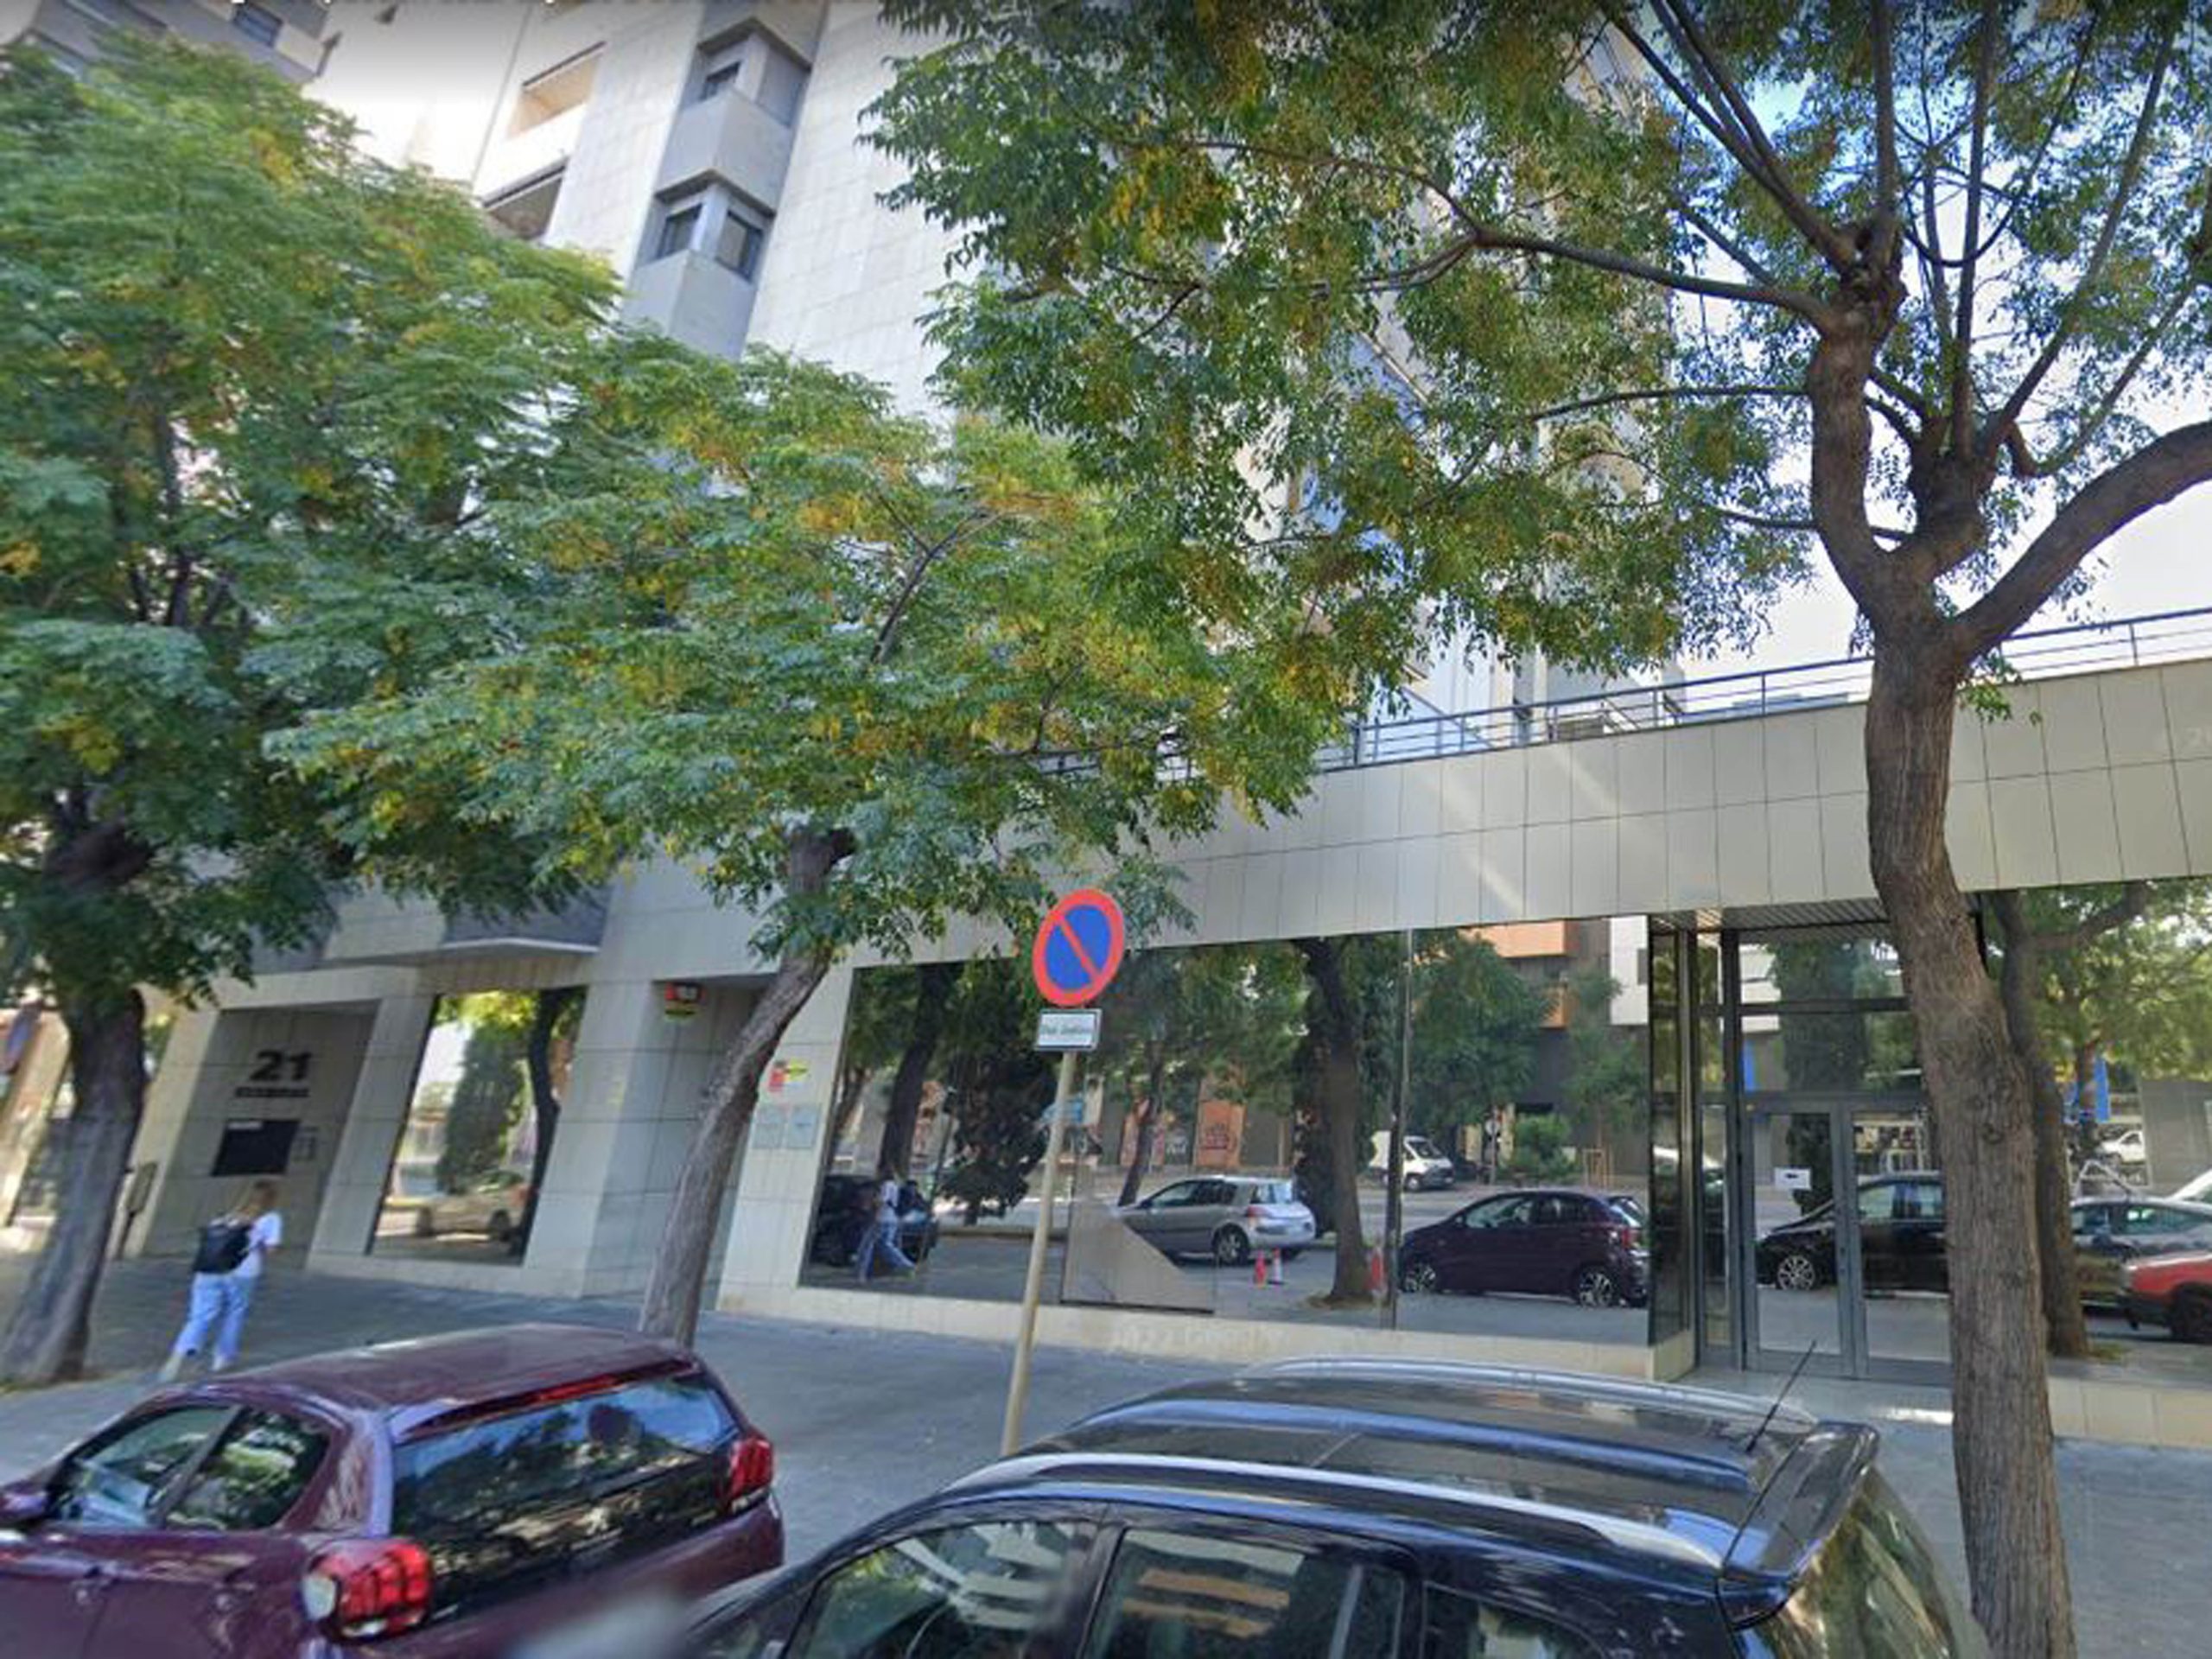 El Juzgado Mercantil de Tarragona perdona una deuda de 37.985 euros a una mujer cuya insolvencia tuvo su origen en el impago de la manutención de sus hijos por parte de su exmarido